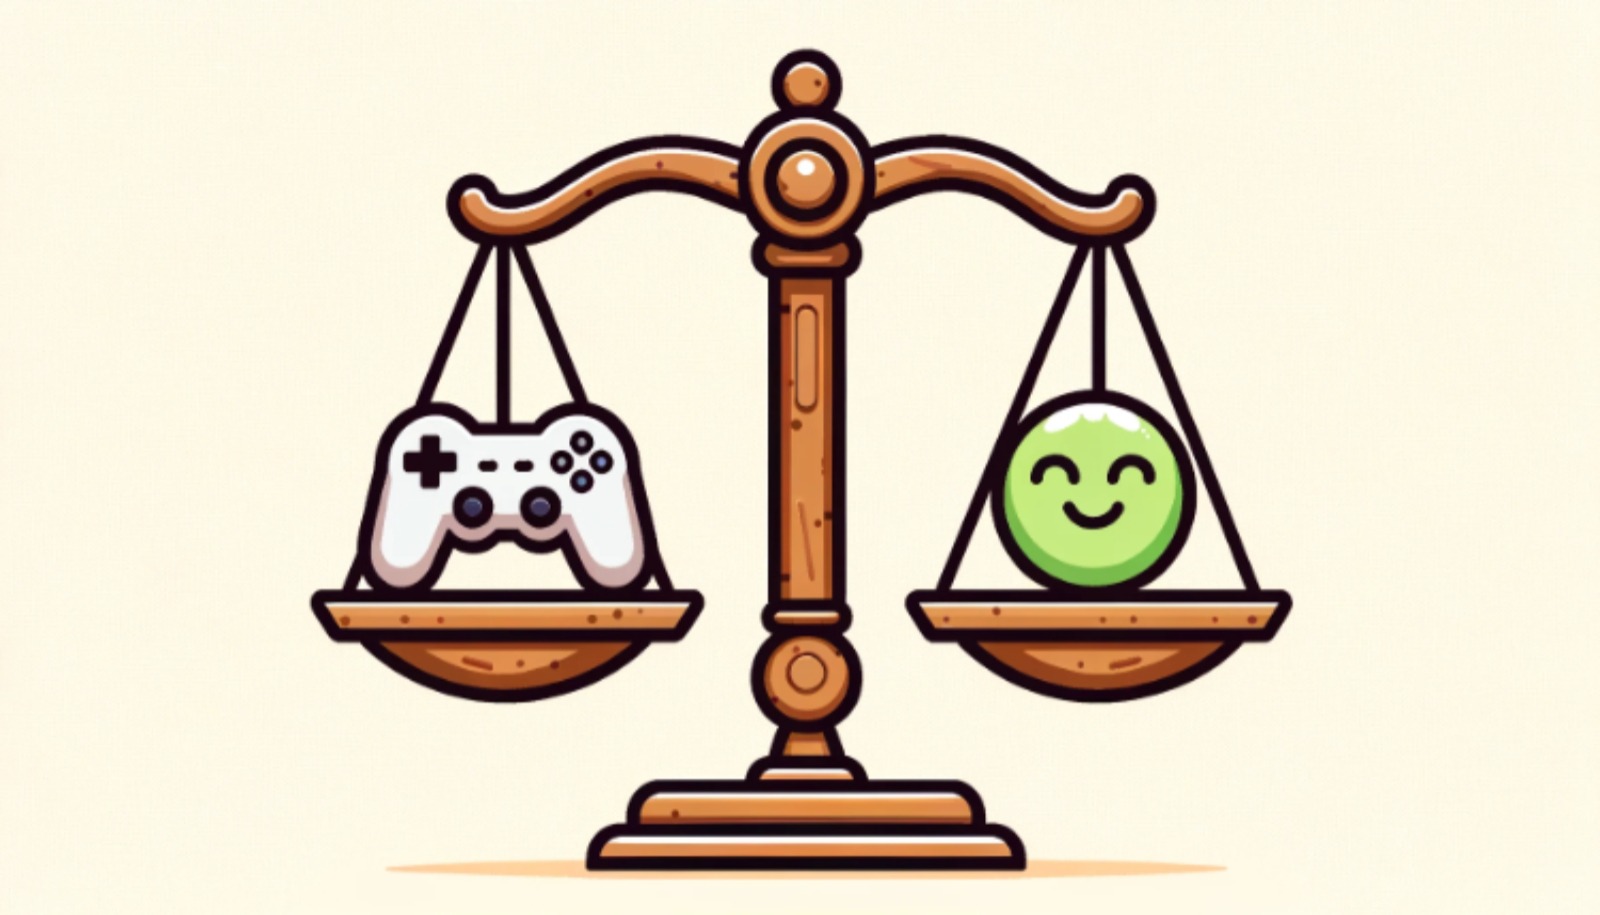 Internationale Studie „Power of Play“ zu positiven Auswirkungen von Games auf Mental Health